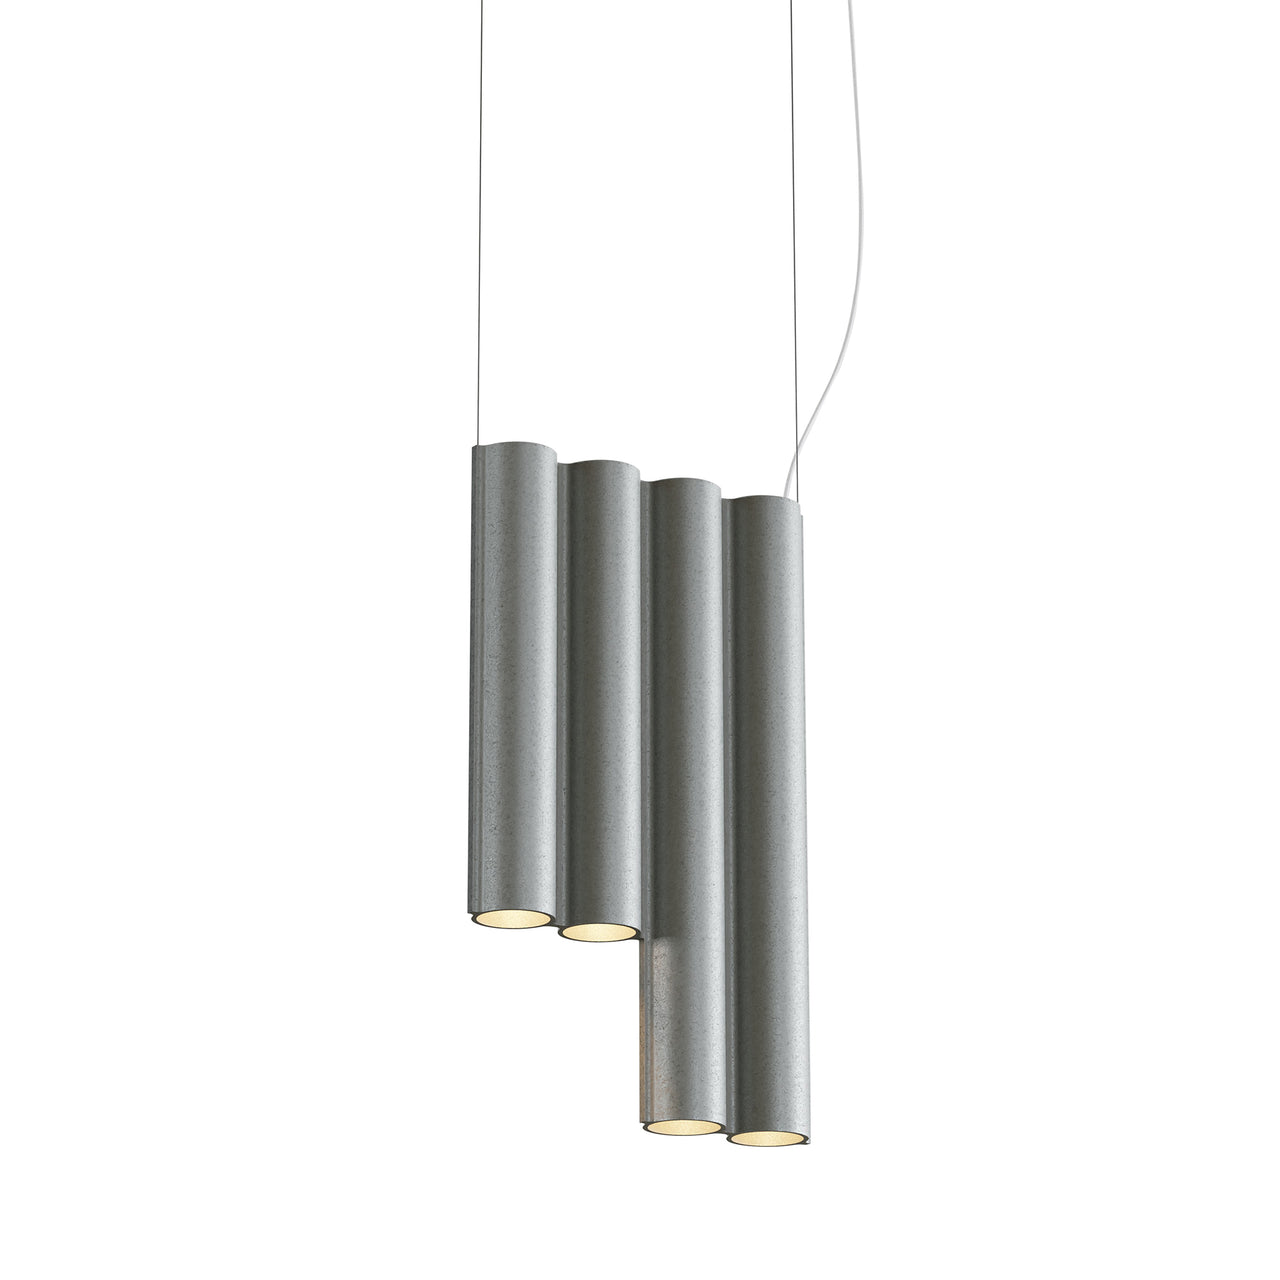 Silo 4SE Suspension Lamp: Tumbled Aluminum